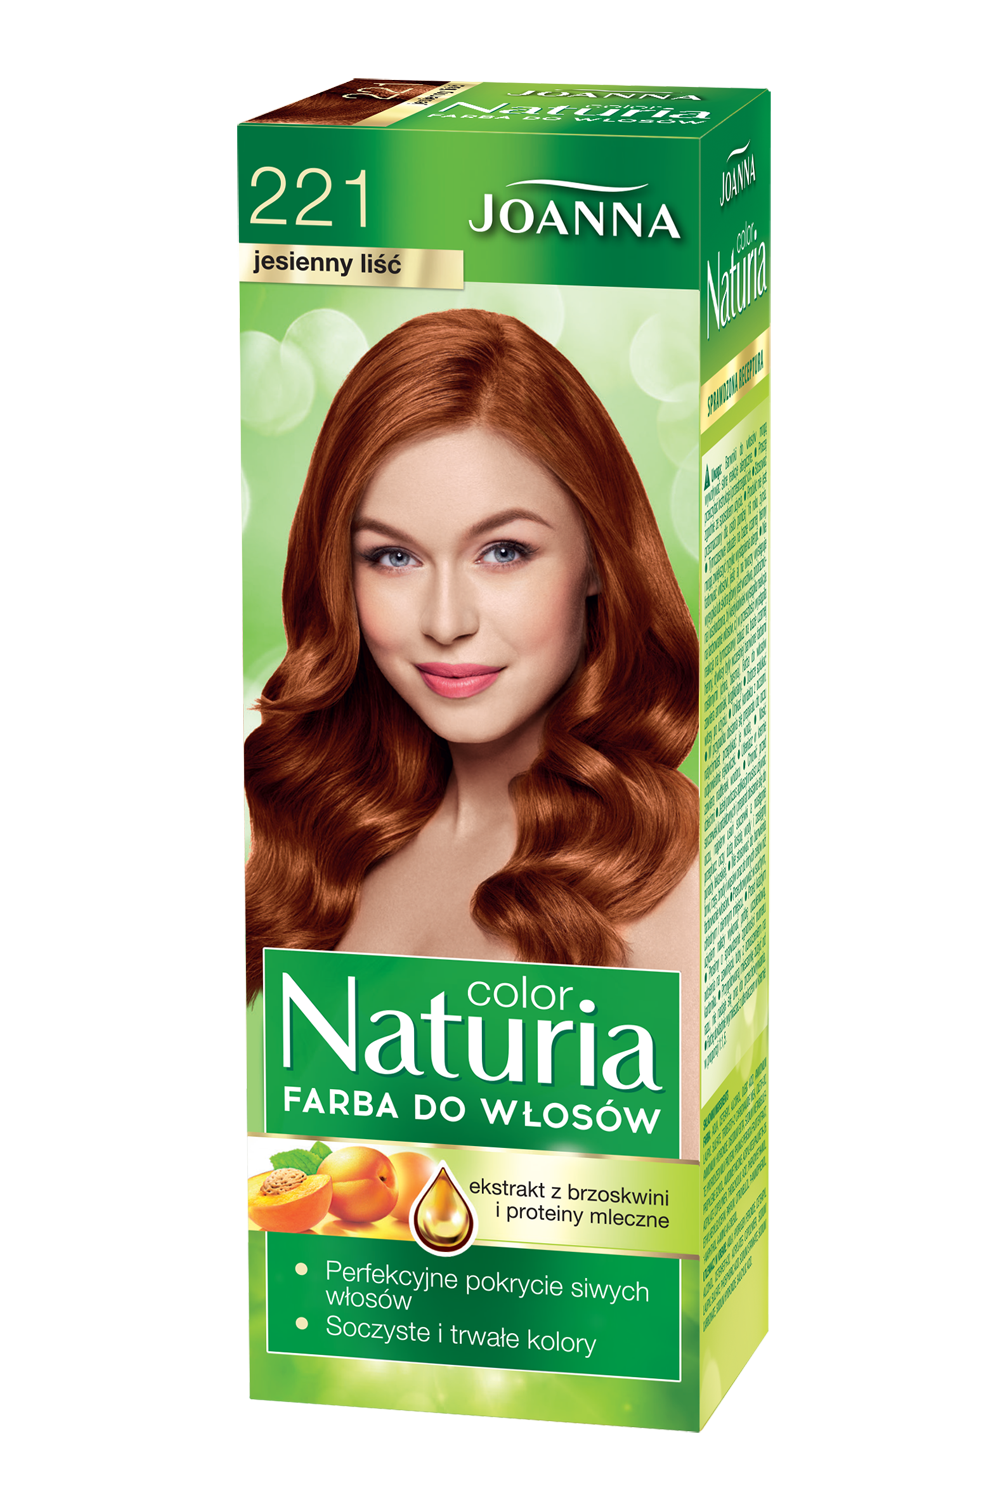 Farba do włosów Joanna Naturia Color w odcieniu nr 221 jesienny liść